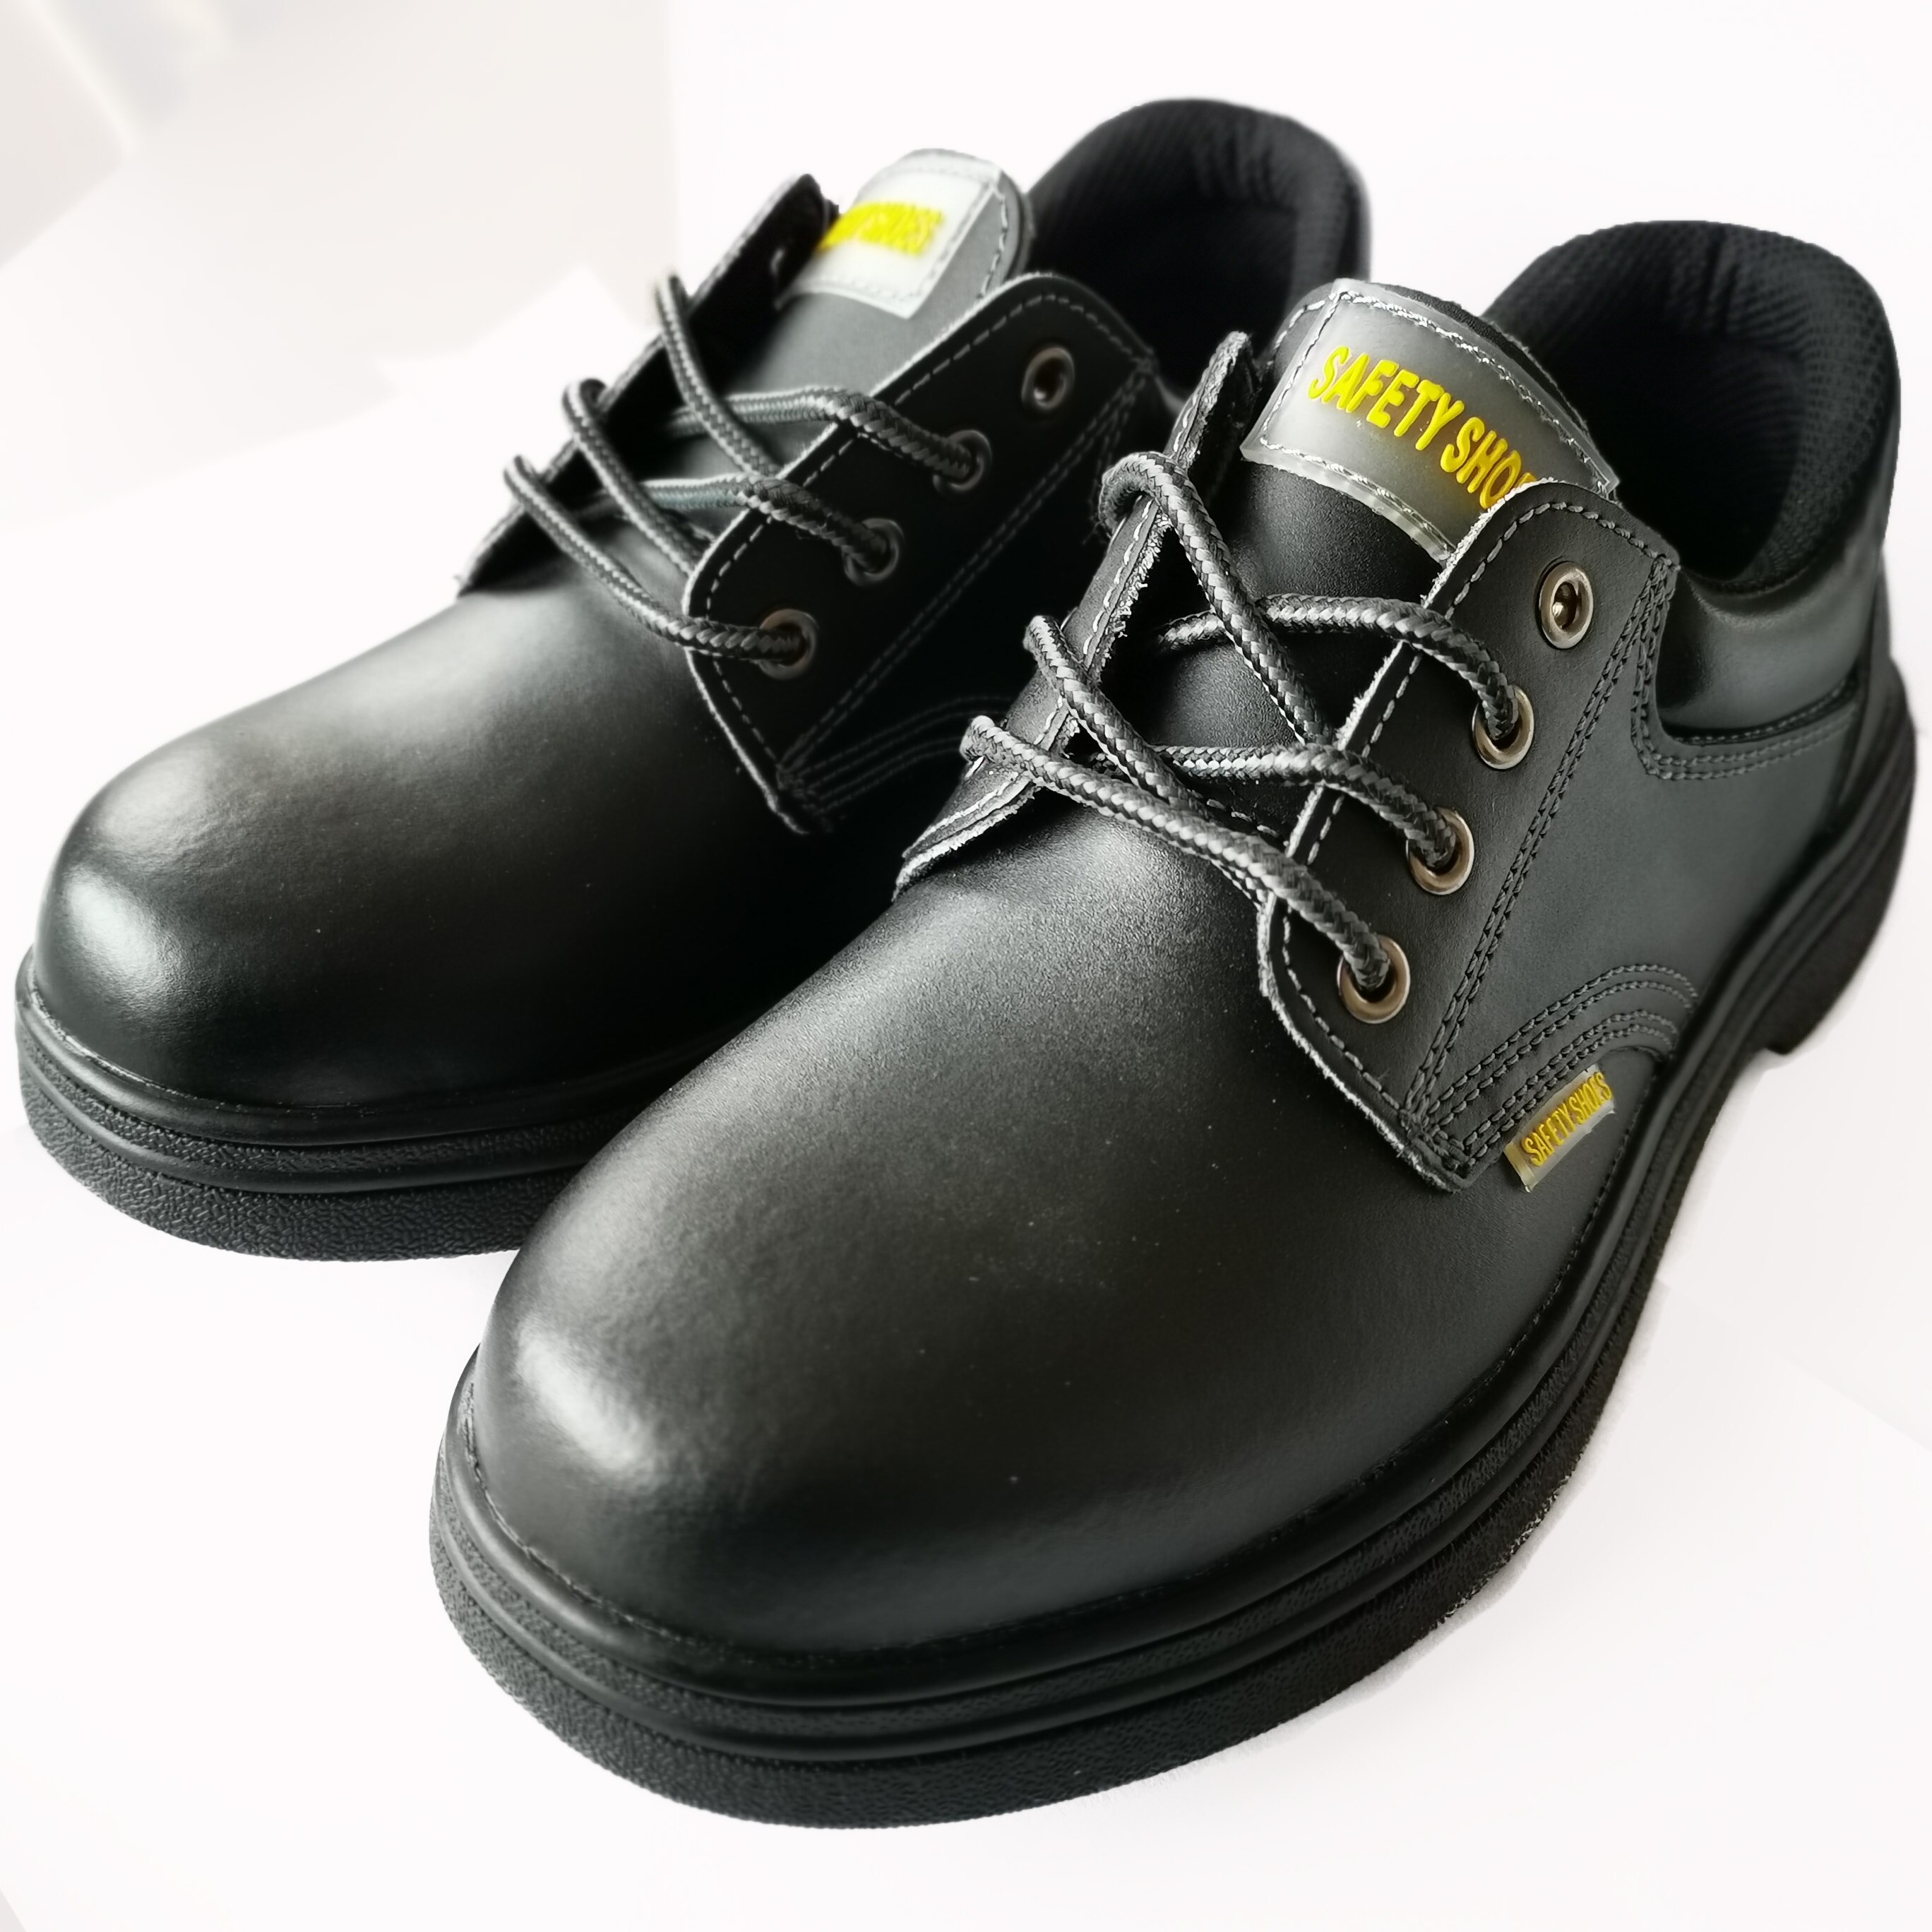 Chaussures de chef en cuir pour hommes, semelle extérieure en acier étanche à l'huile et antidérapante avec bout en acier